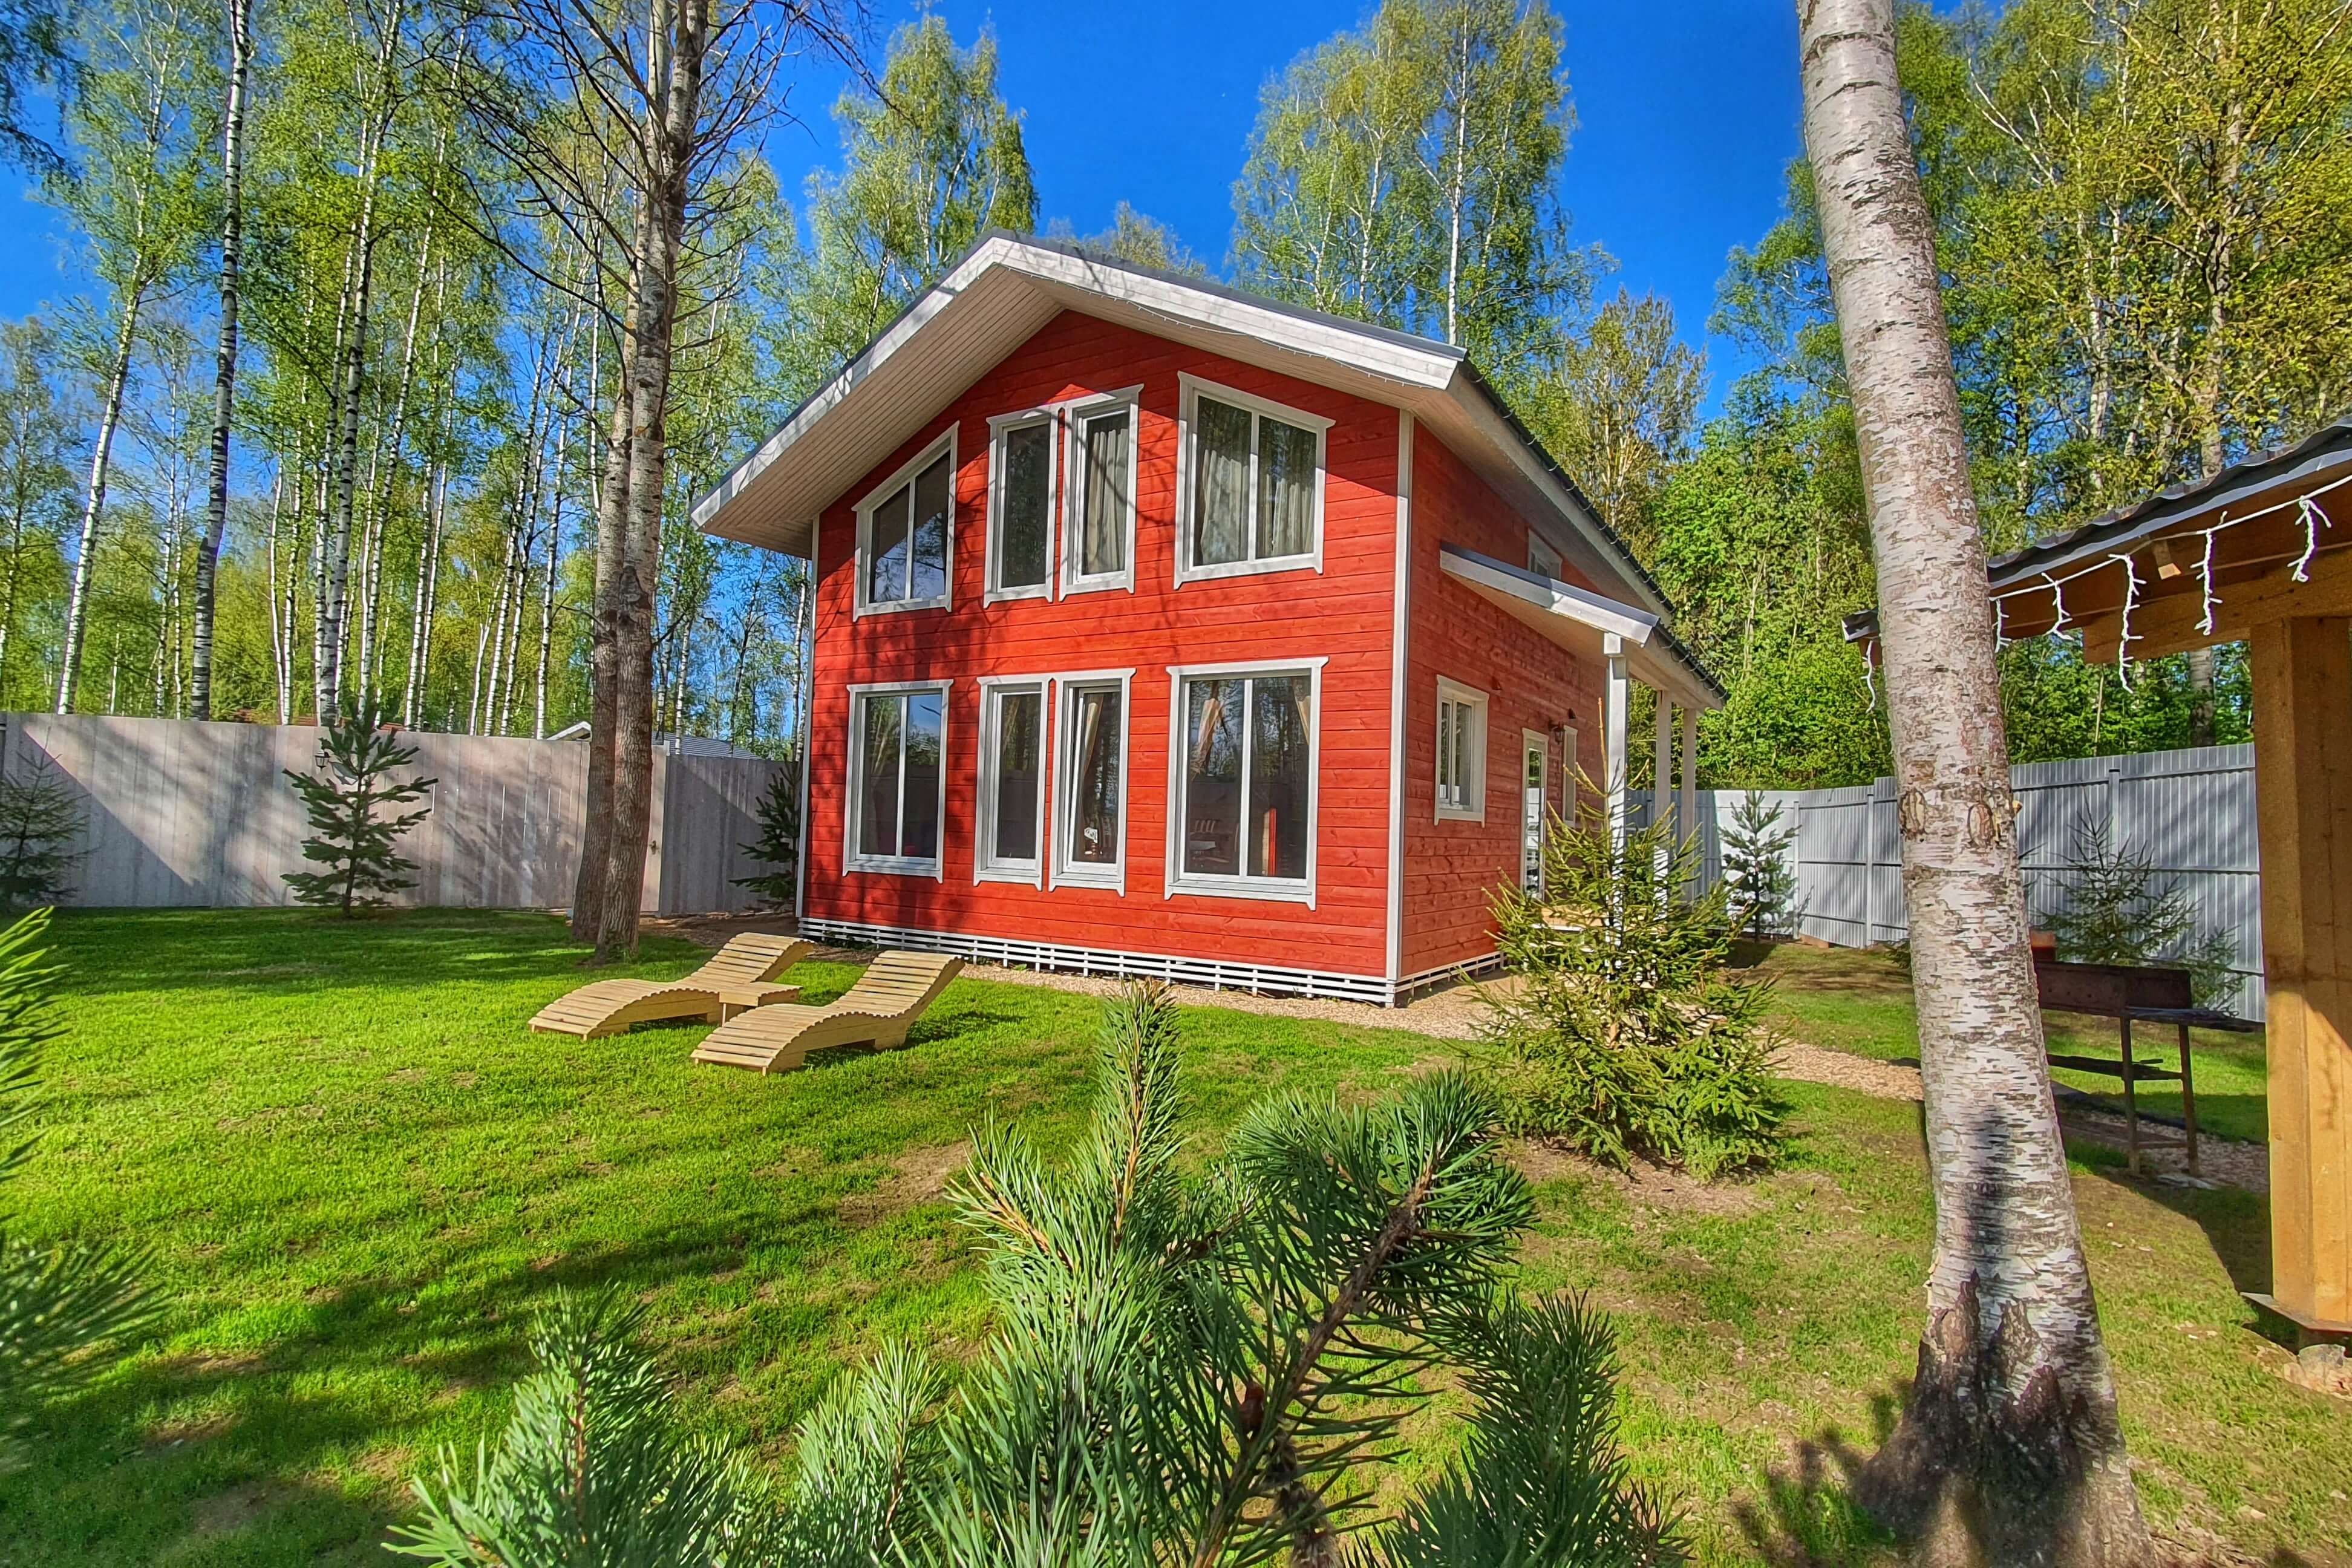 На газонах установлены деревянные шезлонги, а дома выкрашены в яркий, красный цвет.